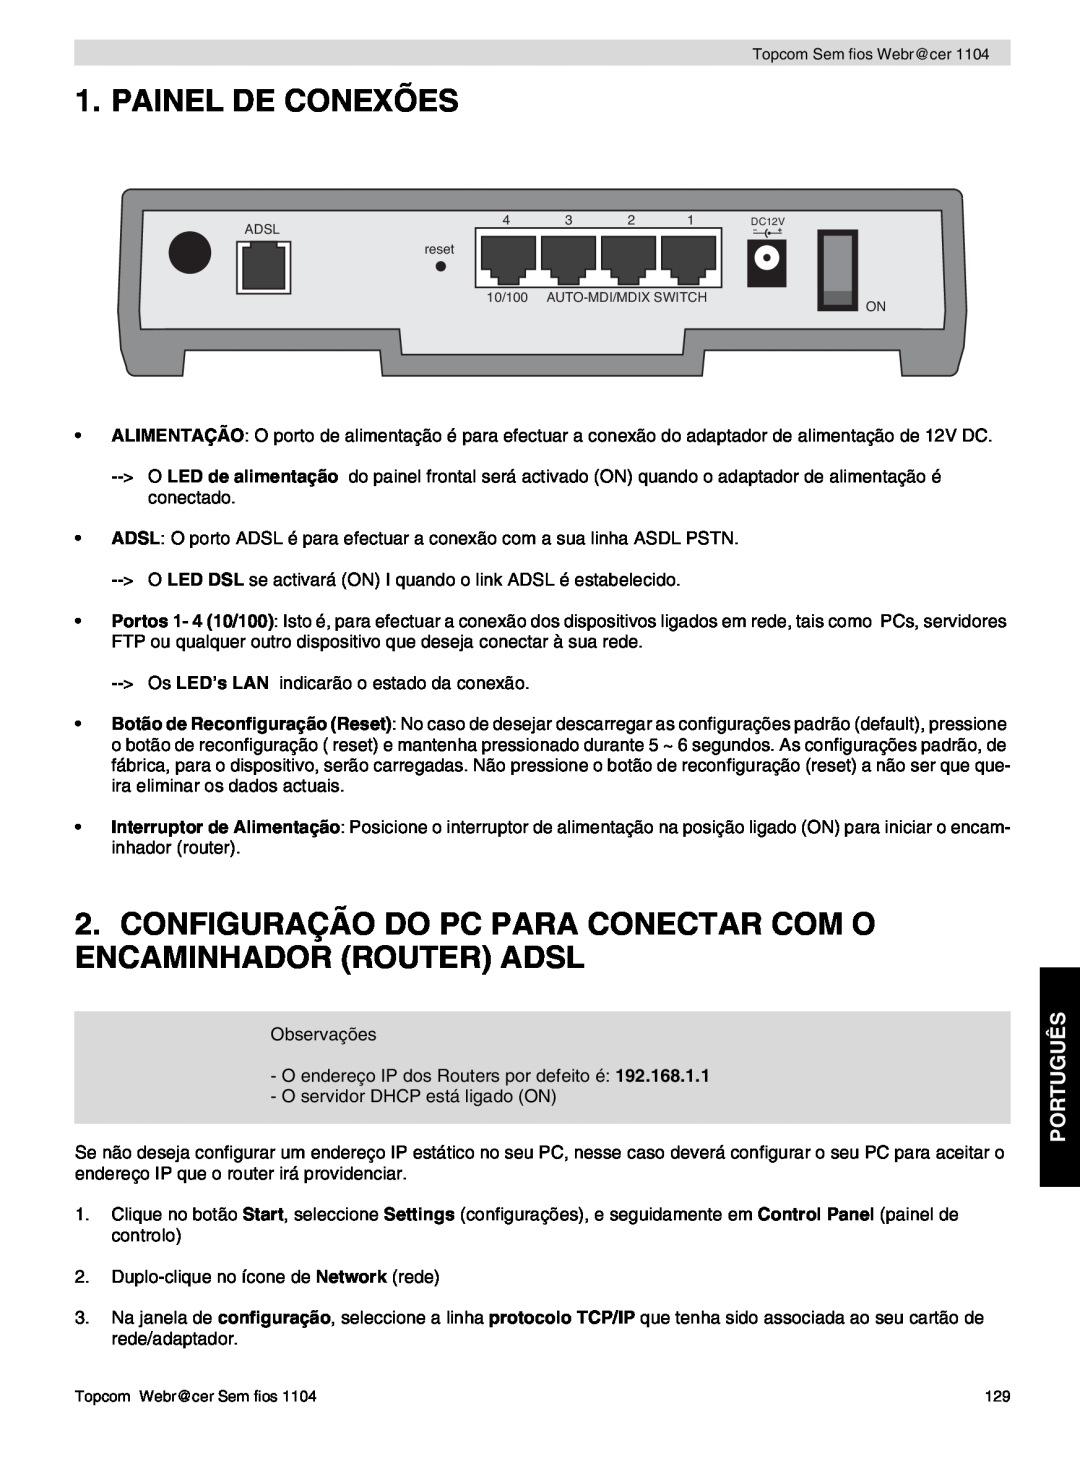 Topcom 1104 Painel De Conexões, Configuração Do Pc Para Conectar Com O Encaminhador Router Adsl, Português 